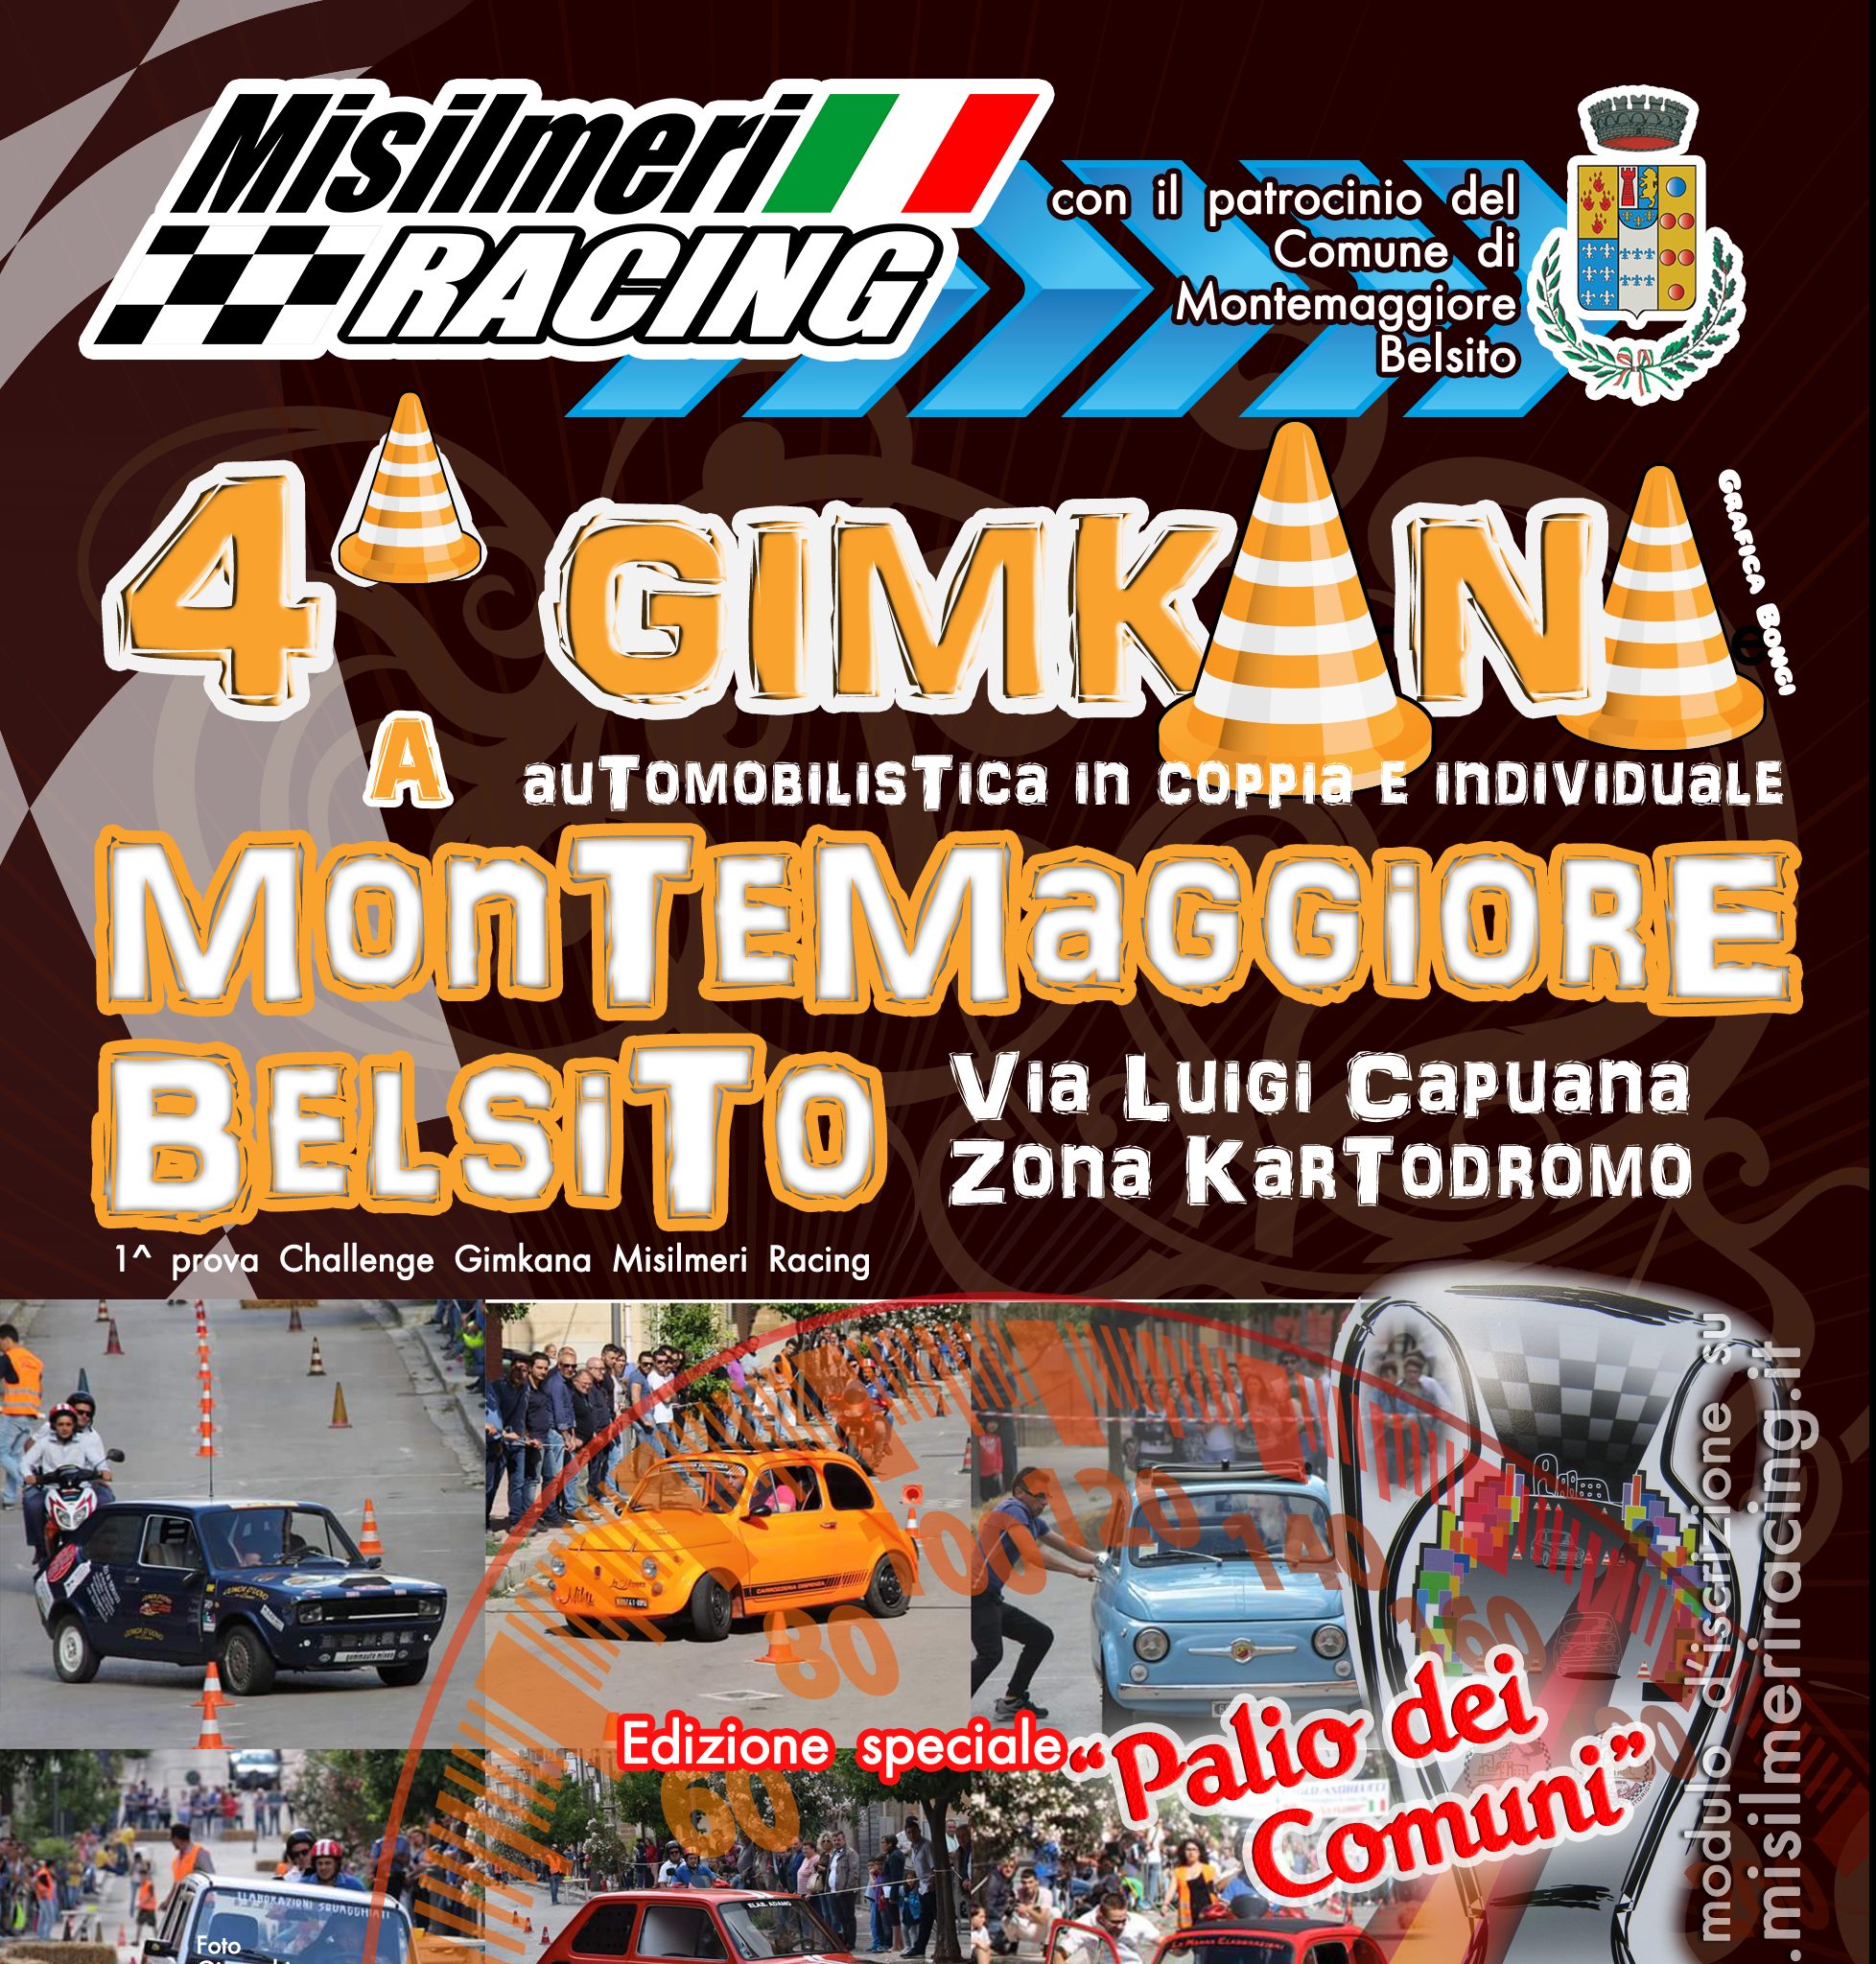 Domenica la Misilmeri Racing organizza la 4^ Gimkana a Montemaggiore Belsito